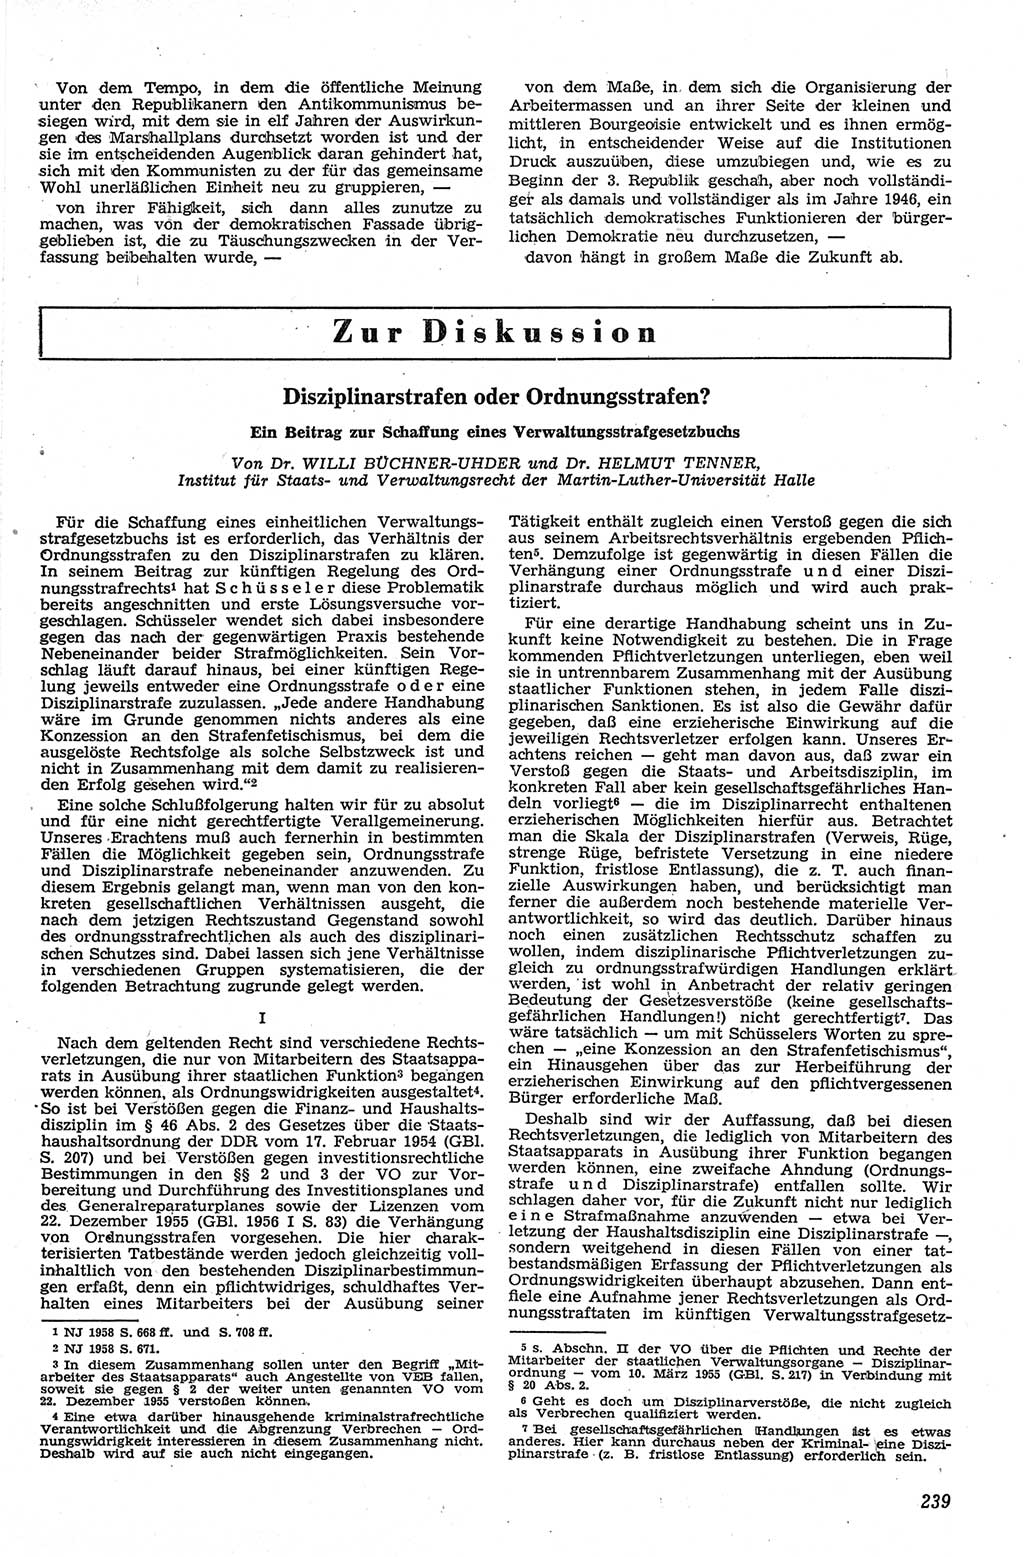 Neue Justiz (NJ), Zeitschrift für Recht und Rechtswissenschaft [Deutsche Demokratische Republik (DDR)], 13. Jahrgang 1959, Seite 239 (NJ DDR 1959, S. 239)